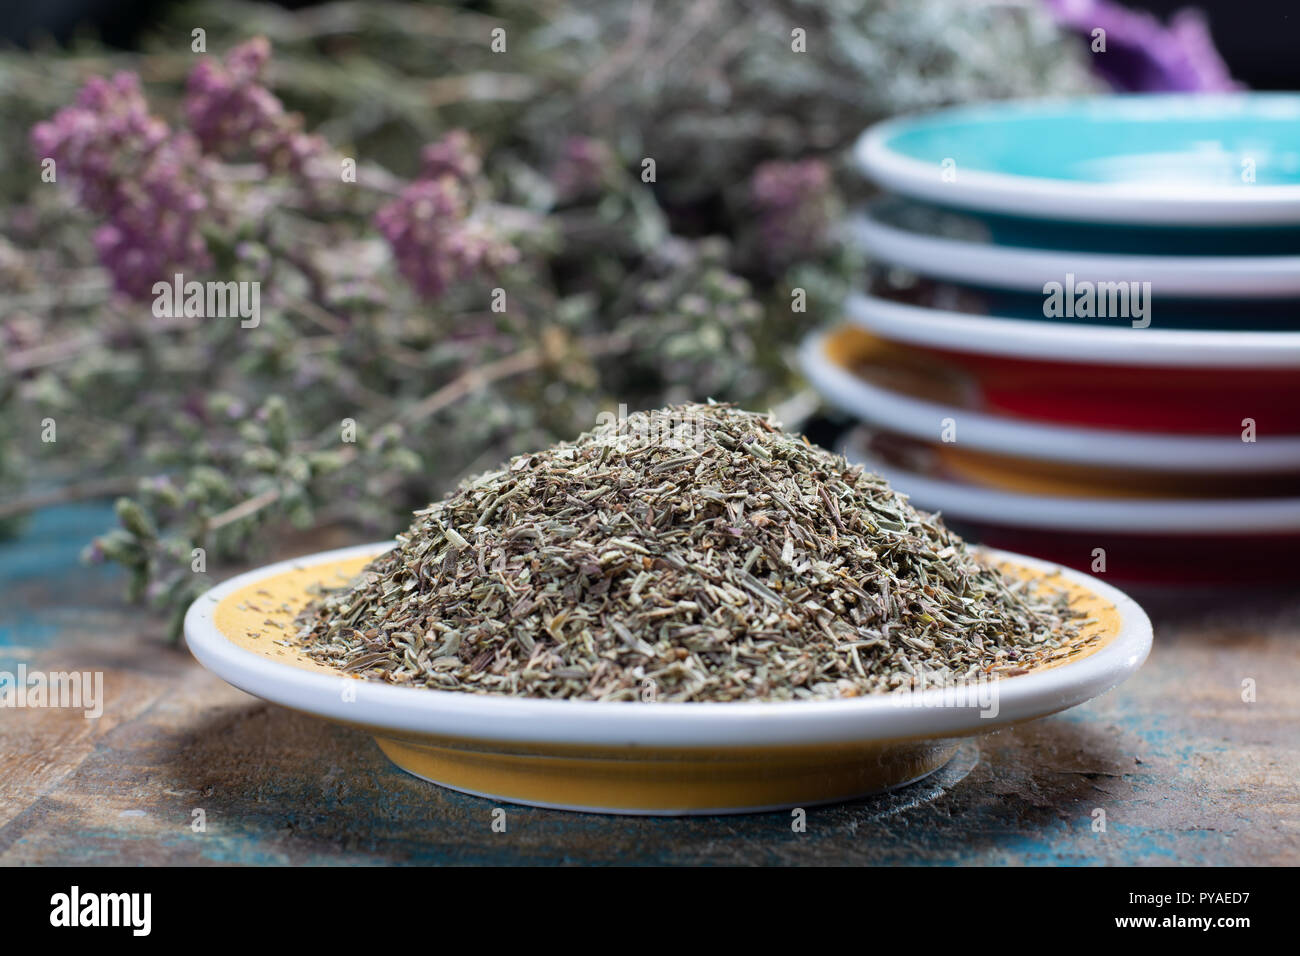 Herbes de Provence, miscela di erbe essiccate considerati tipici della regione della Provenza, miscele contengono spesso salato, maggiorana, rosmarino, timo, origano Foto Stock